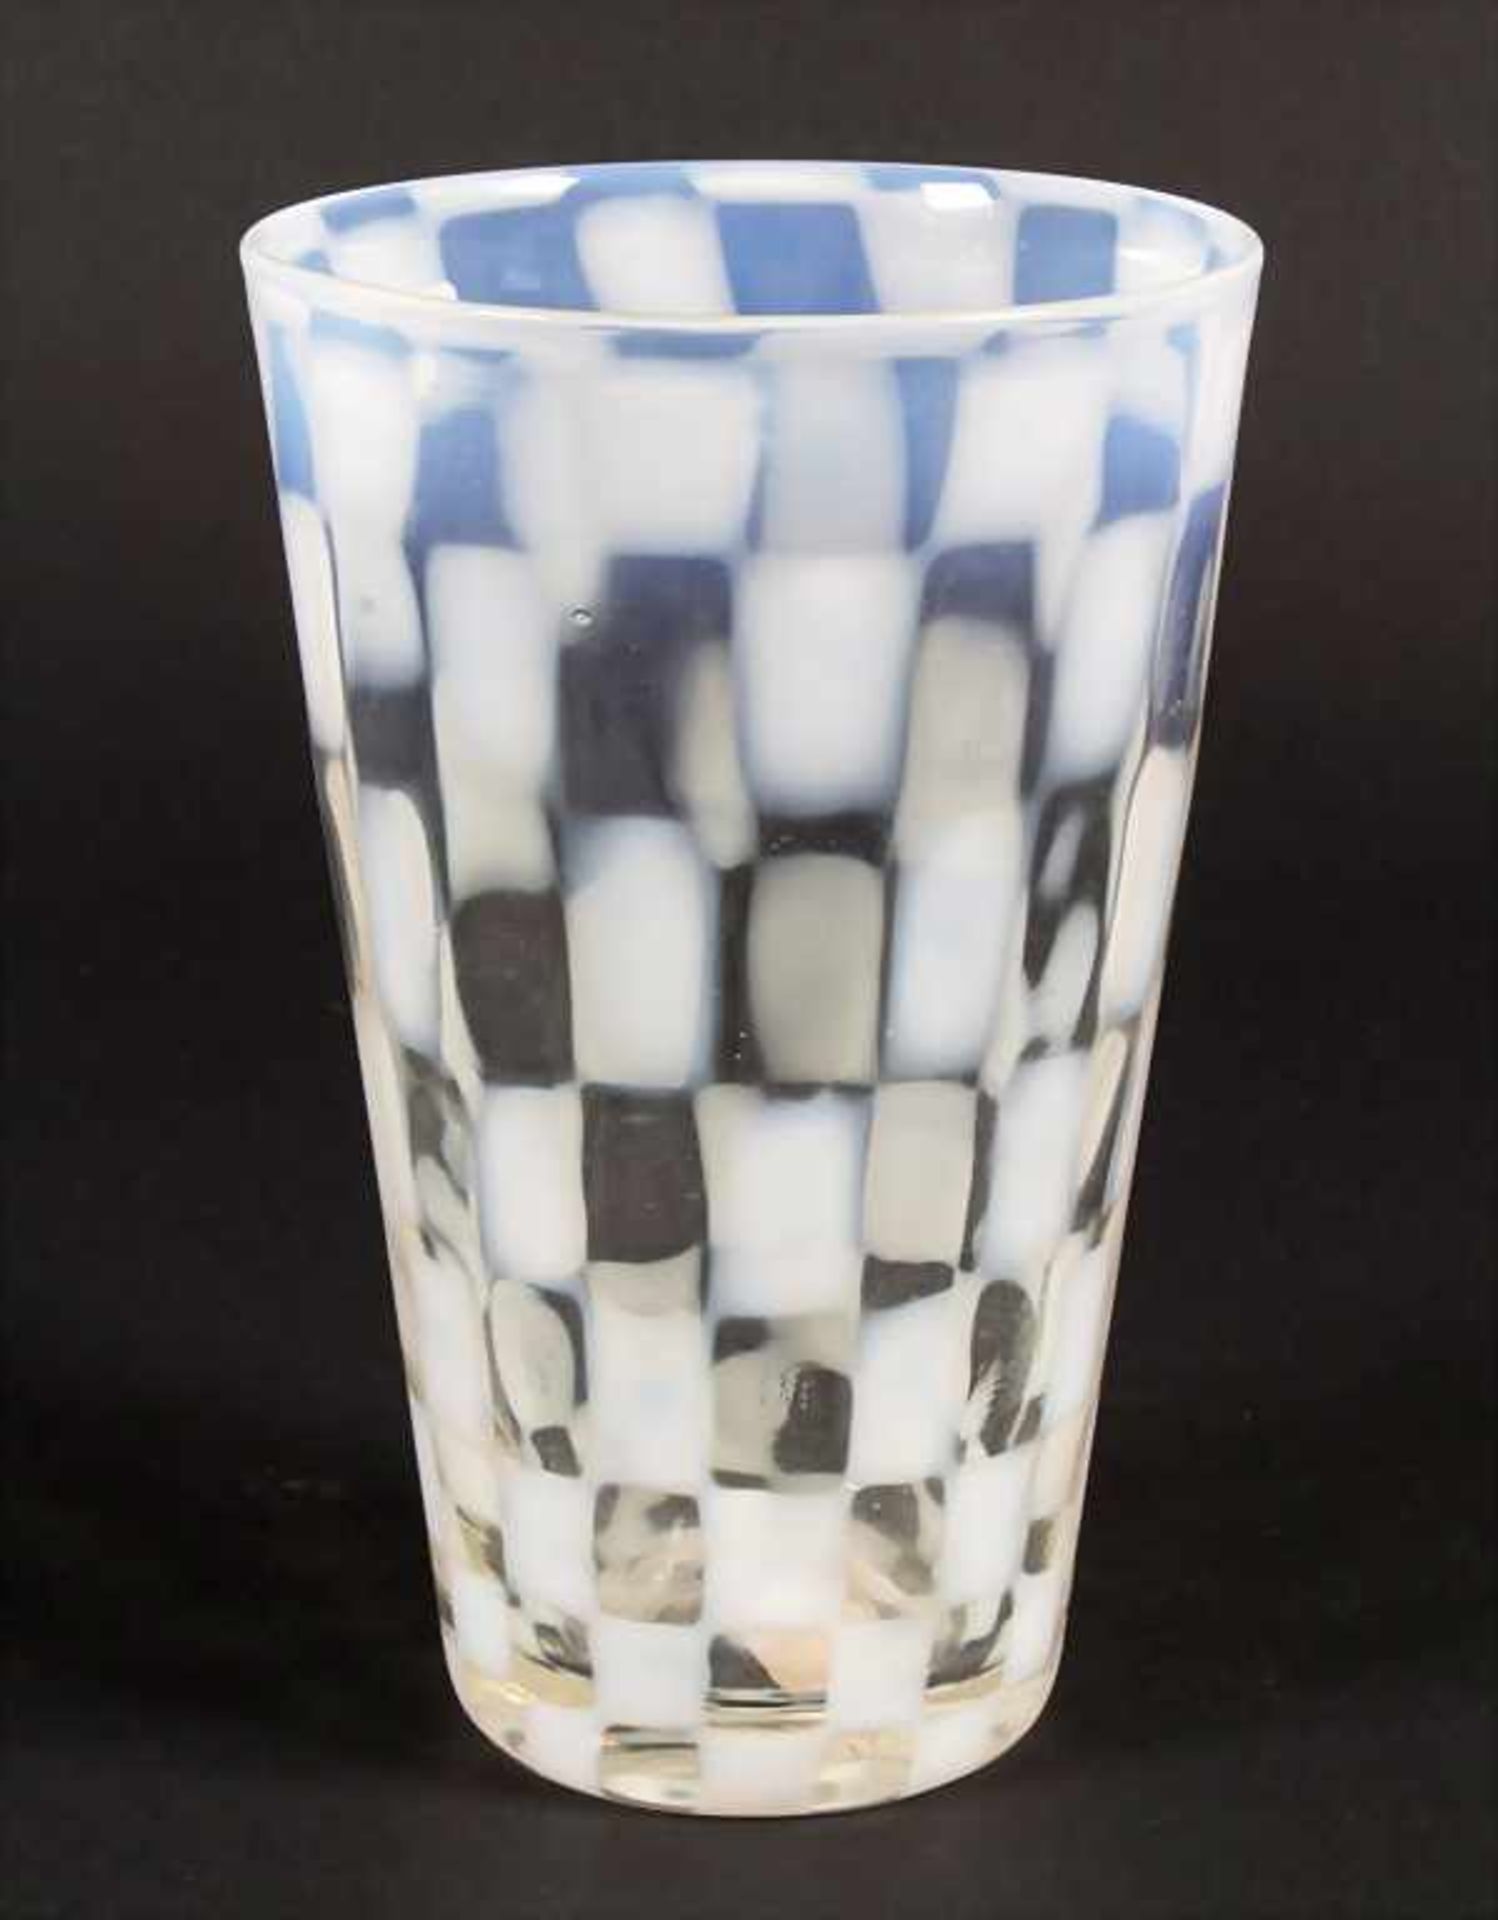 Glasziervase / A decorative glass vase, wohl Brovier & Toso, Murano - Bild 2 aus 4